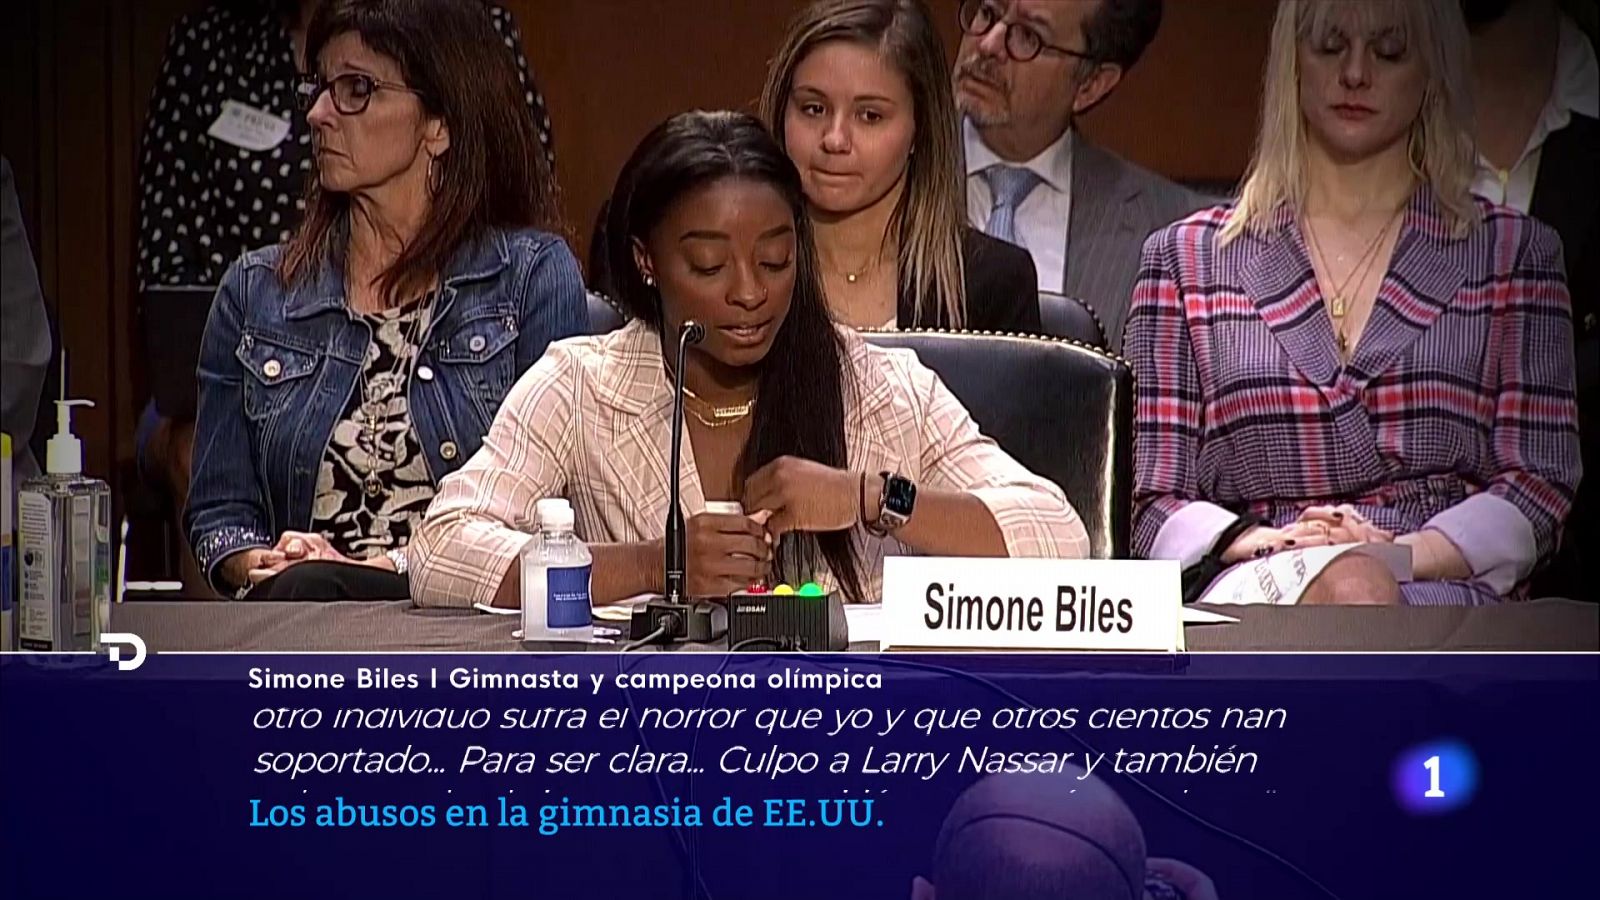 Simone Biles, sobre los abusos a las gimnastas: "Falló todo el sistema" -- Ver ahora